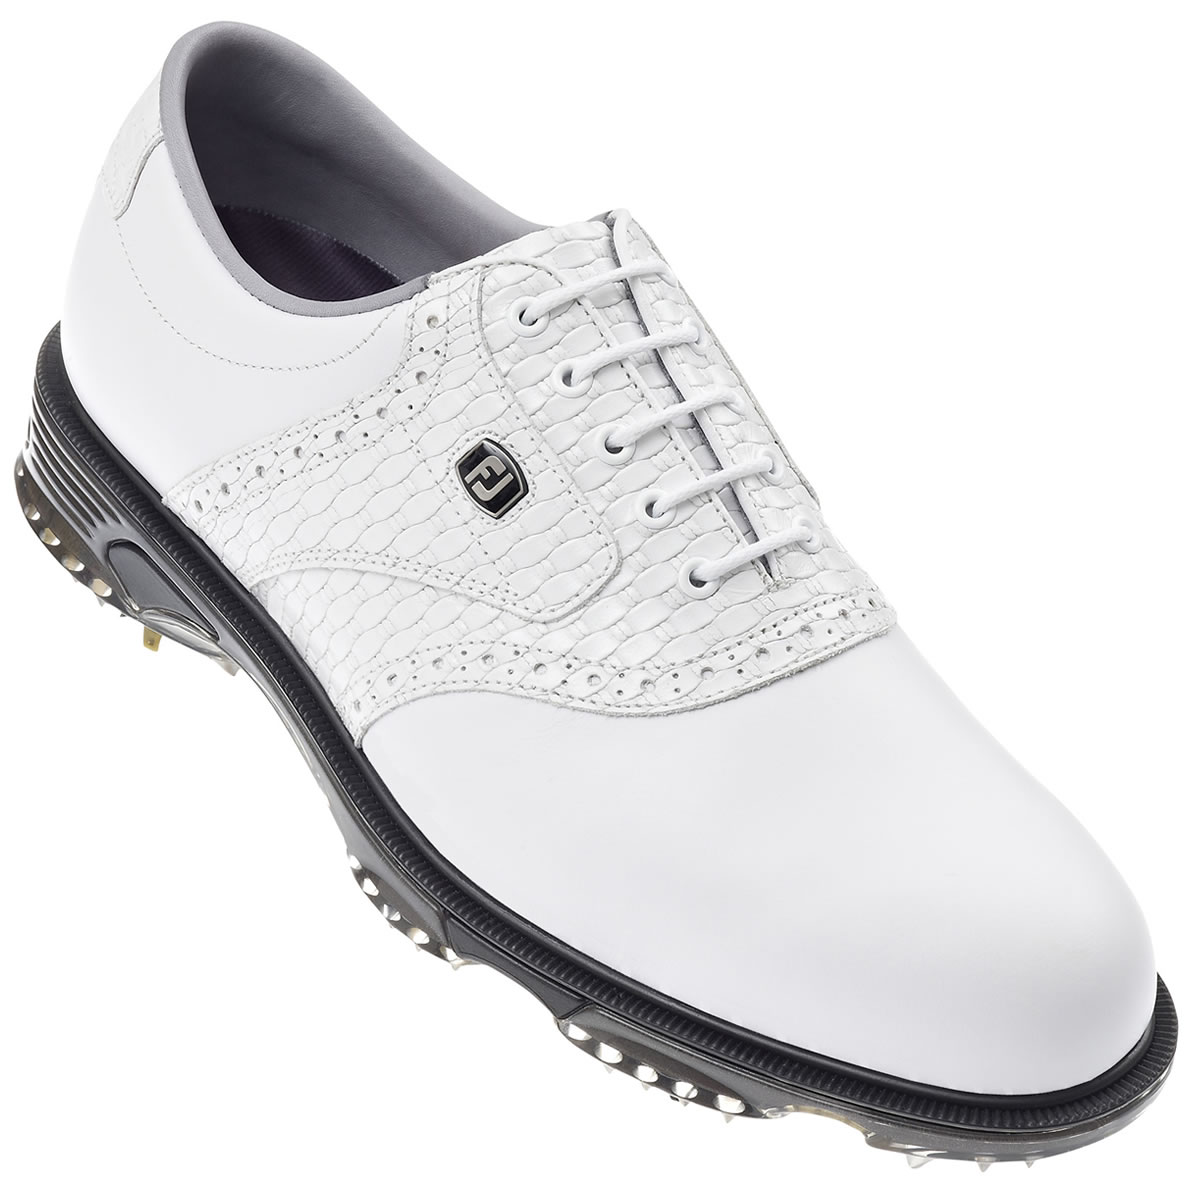 DryJoys Tour Golf Shoes White #53794